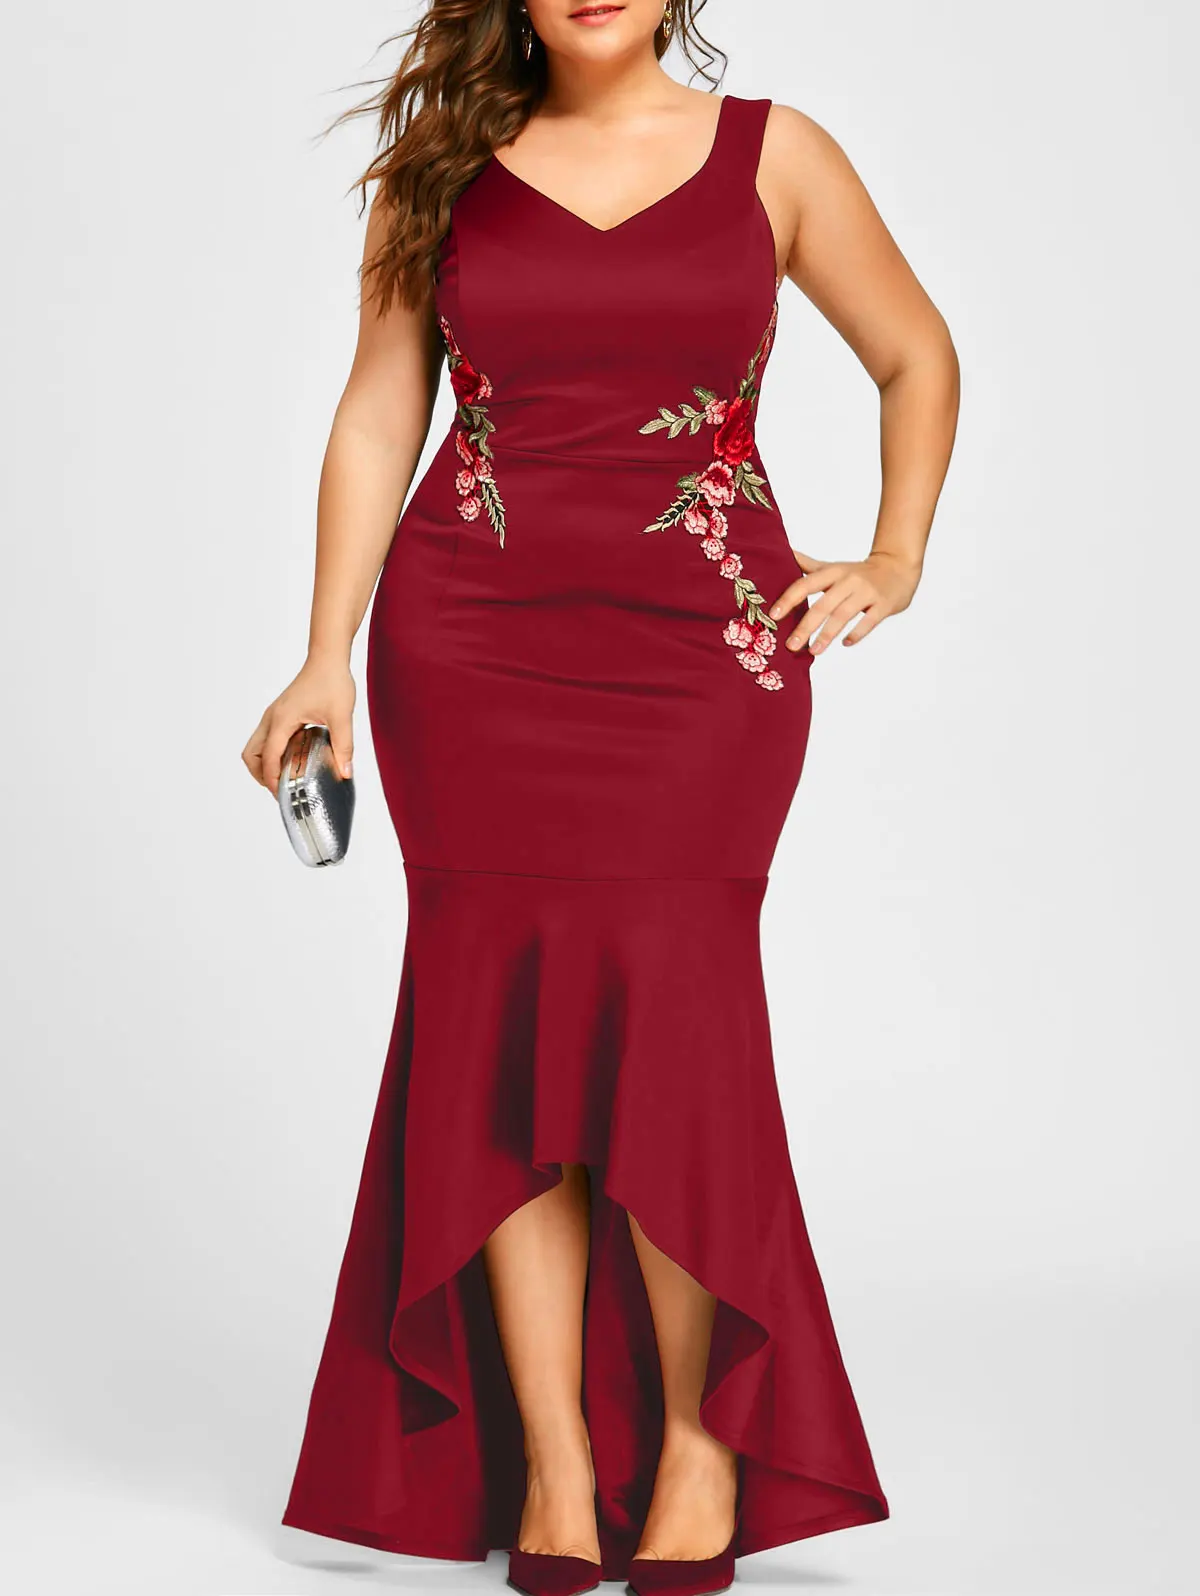 Wipalo вышивка розы Русалка размера плюс 5XL платье Макси сексуальное черное платье с v-образным вырезом длинные элегантные вечерние женские платья вечерняя одежда - Цвет: red